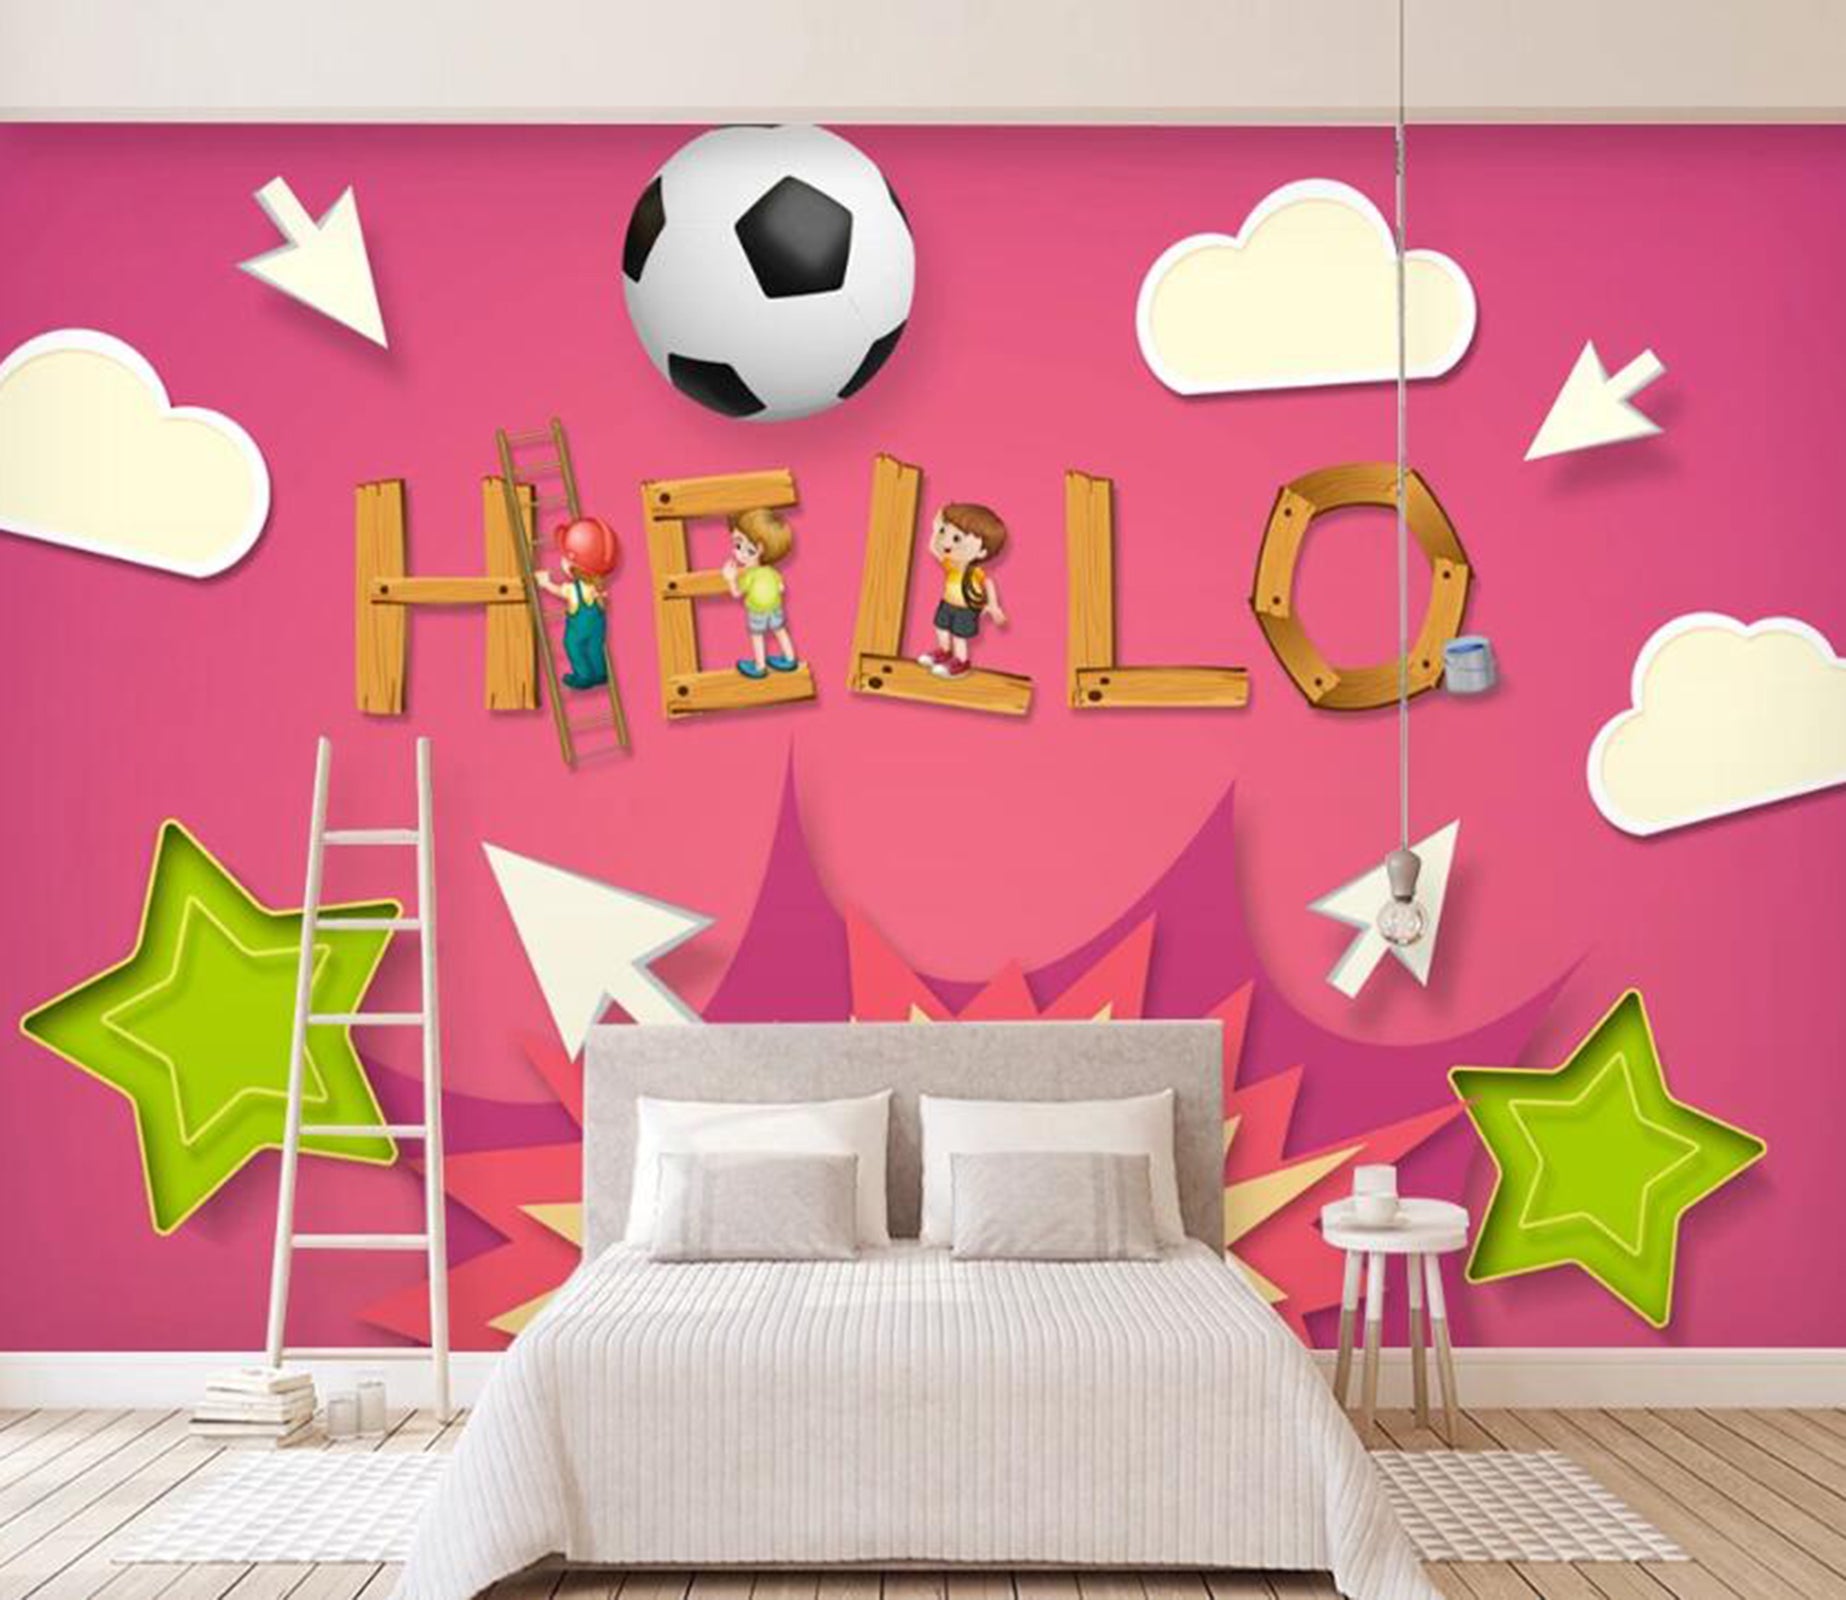 3D Football WC35 Wall Murals Wallpaper AJ Wallpaper 2 